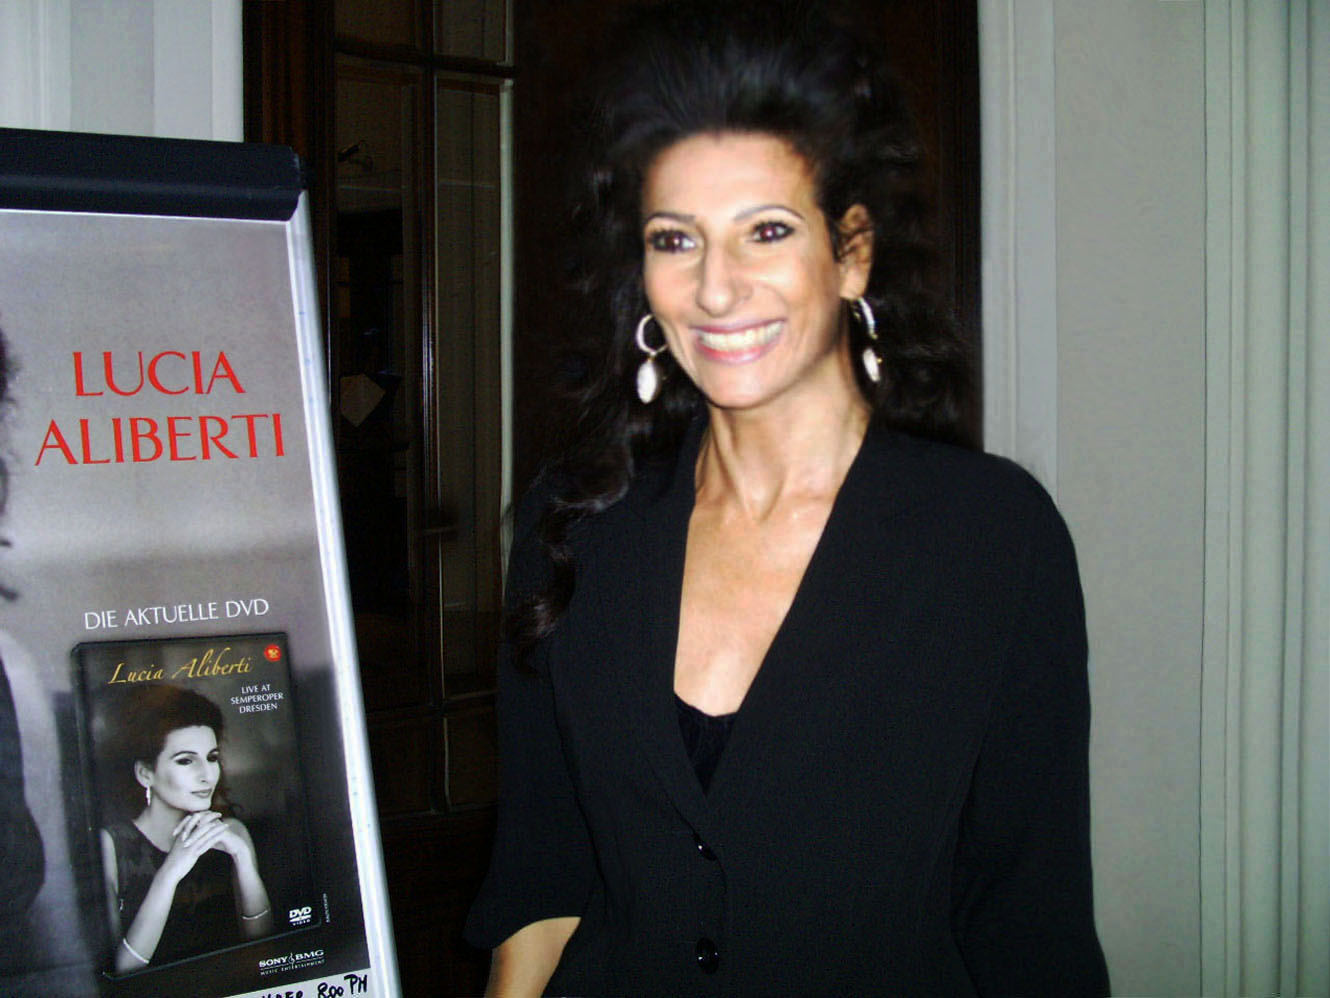 Lucia Aliberti⚘Manoel Theatre⚘Special Gala Concert⚘Malta⚘Autograph Session⚘Armani Fashion⚘:http://www.luciaaliberti.it #luciaaliberti #manoeltheatre #malta #concert #autographsession